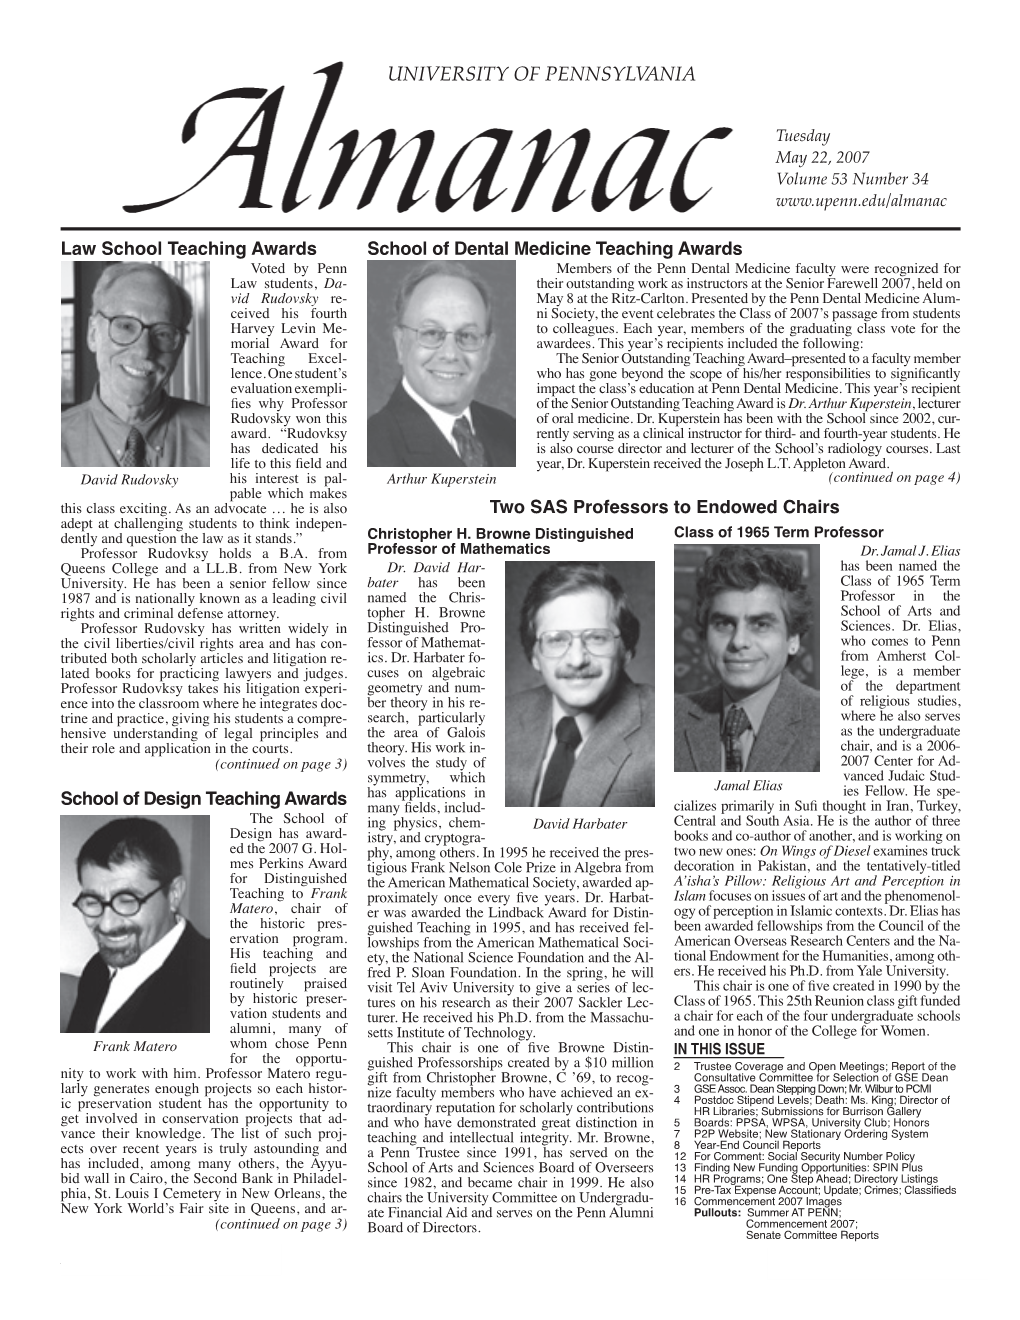 Almanac, Vol. 53 No. 34 May 22, 2007 Issue